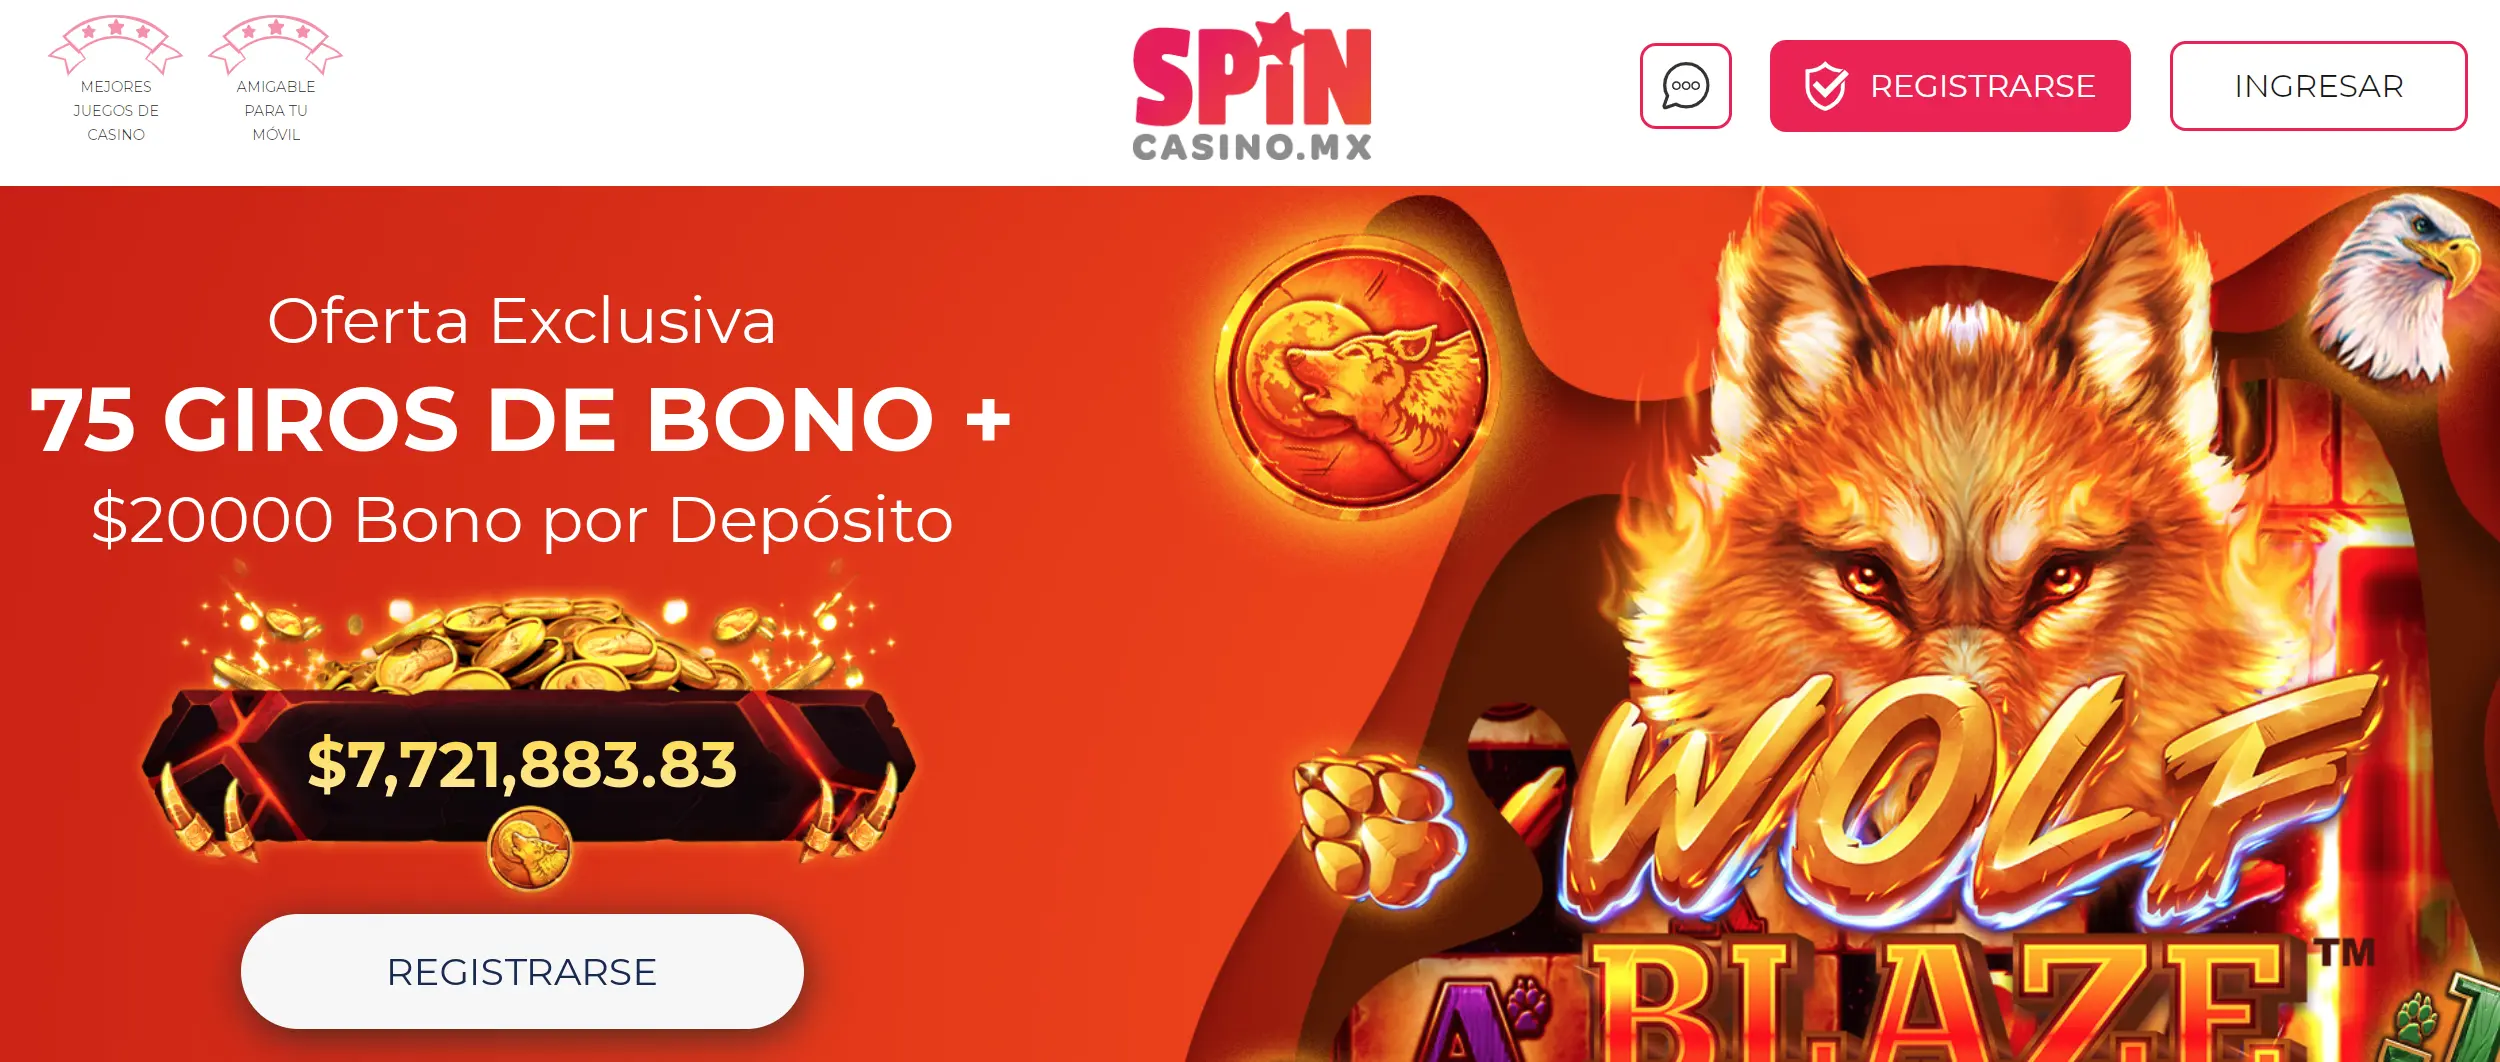 Bonos y promociones en Spin Casino